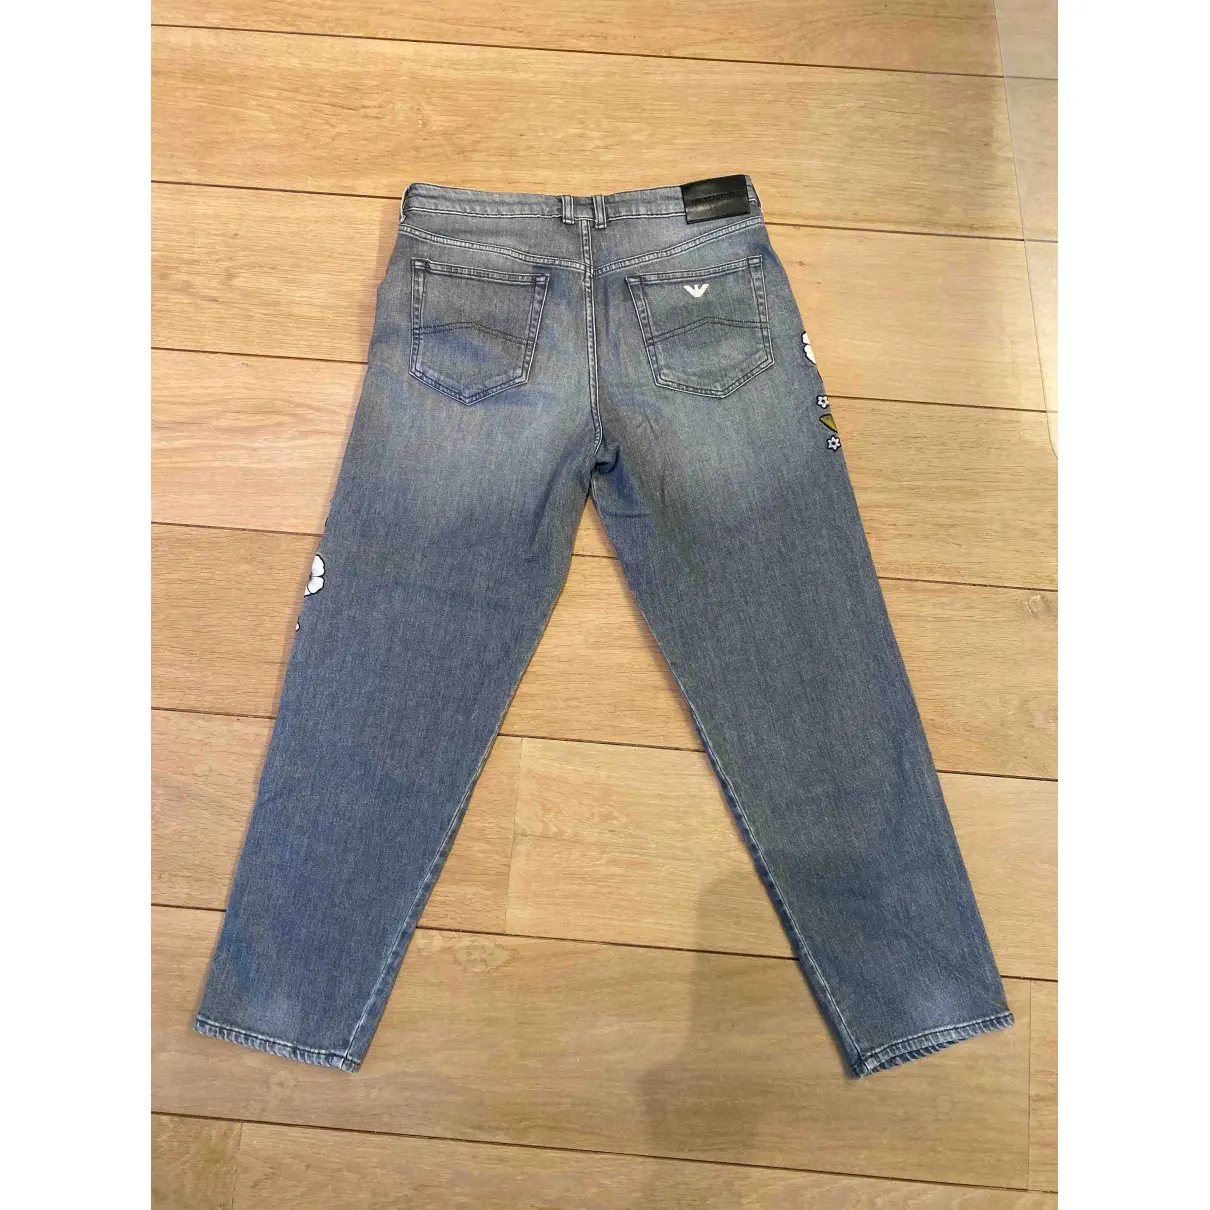 Buy Emporio Armani Jeans online